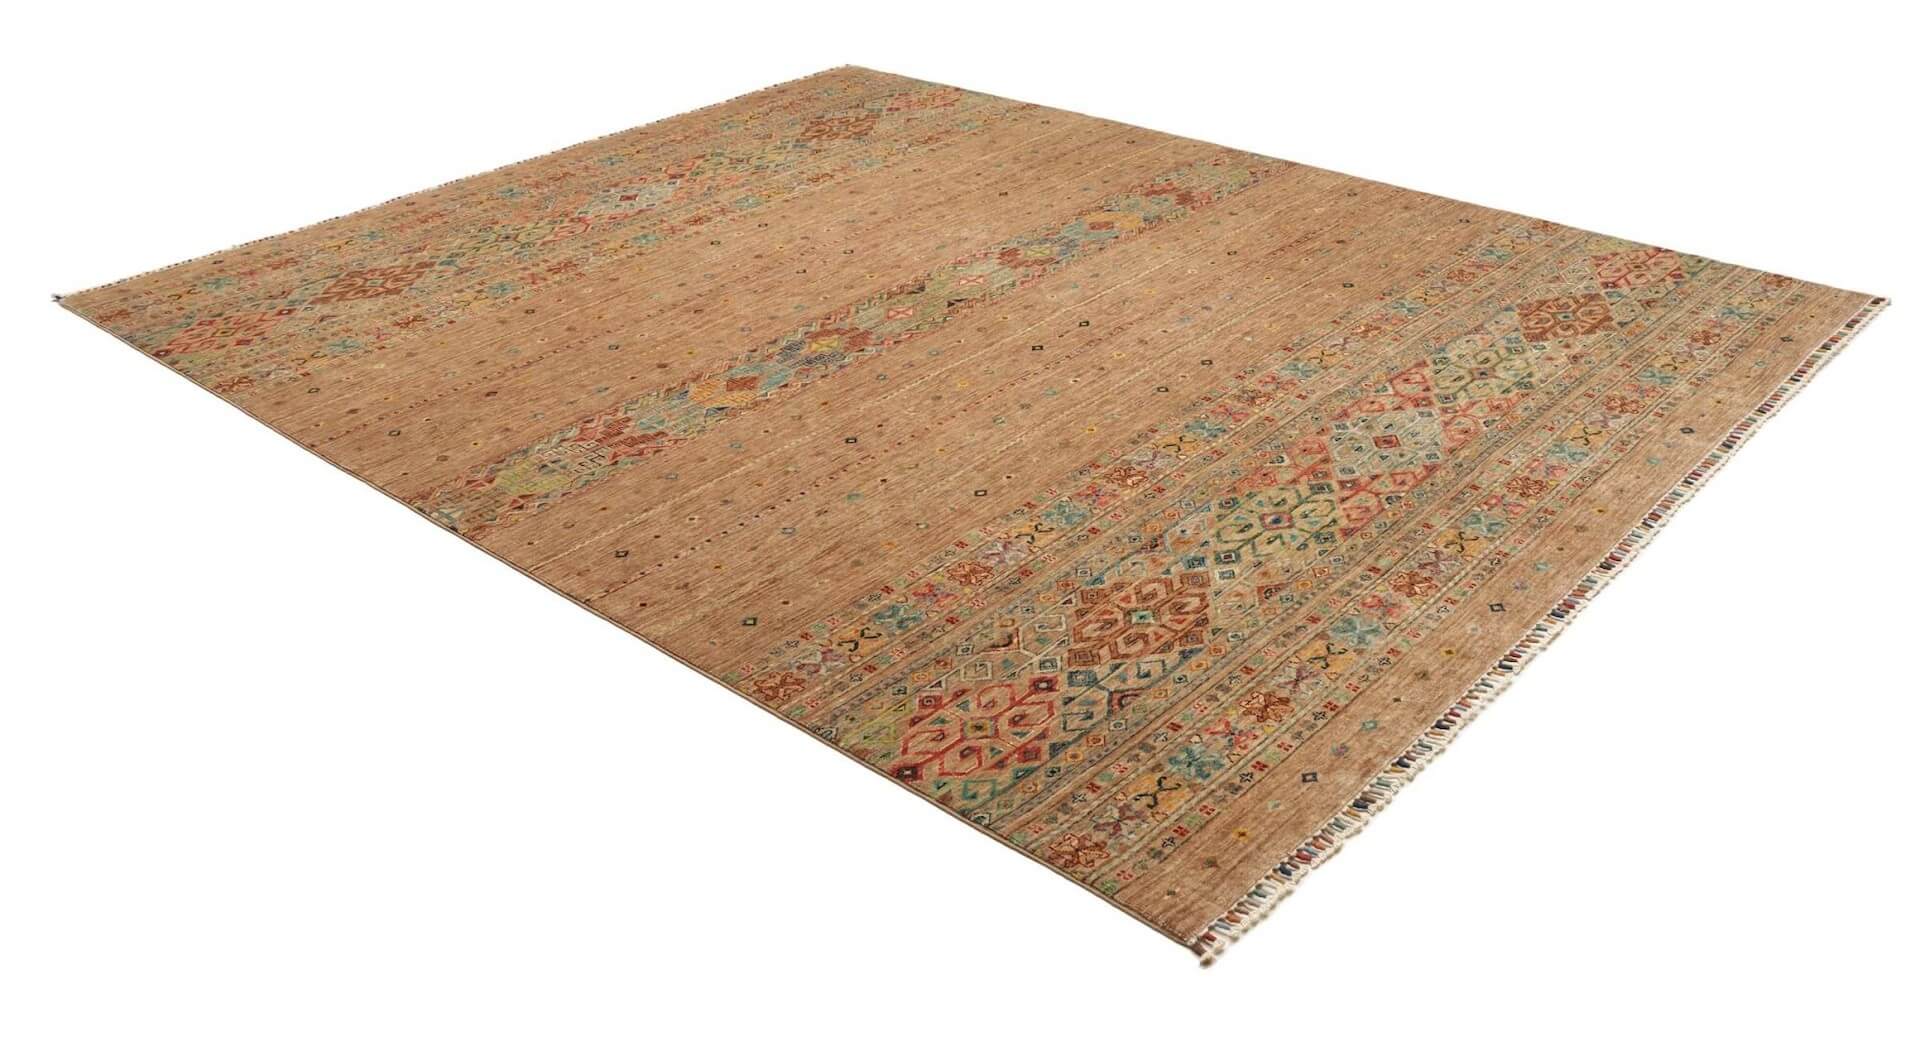 Afghanteppich Rubin Brown, handgeknüpft, Schurwolle, 246 x 300 cm, mehrfarbig, Schrägansicht